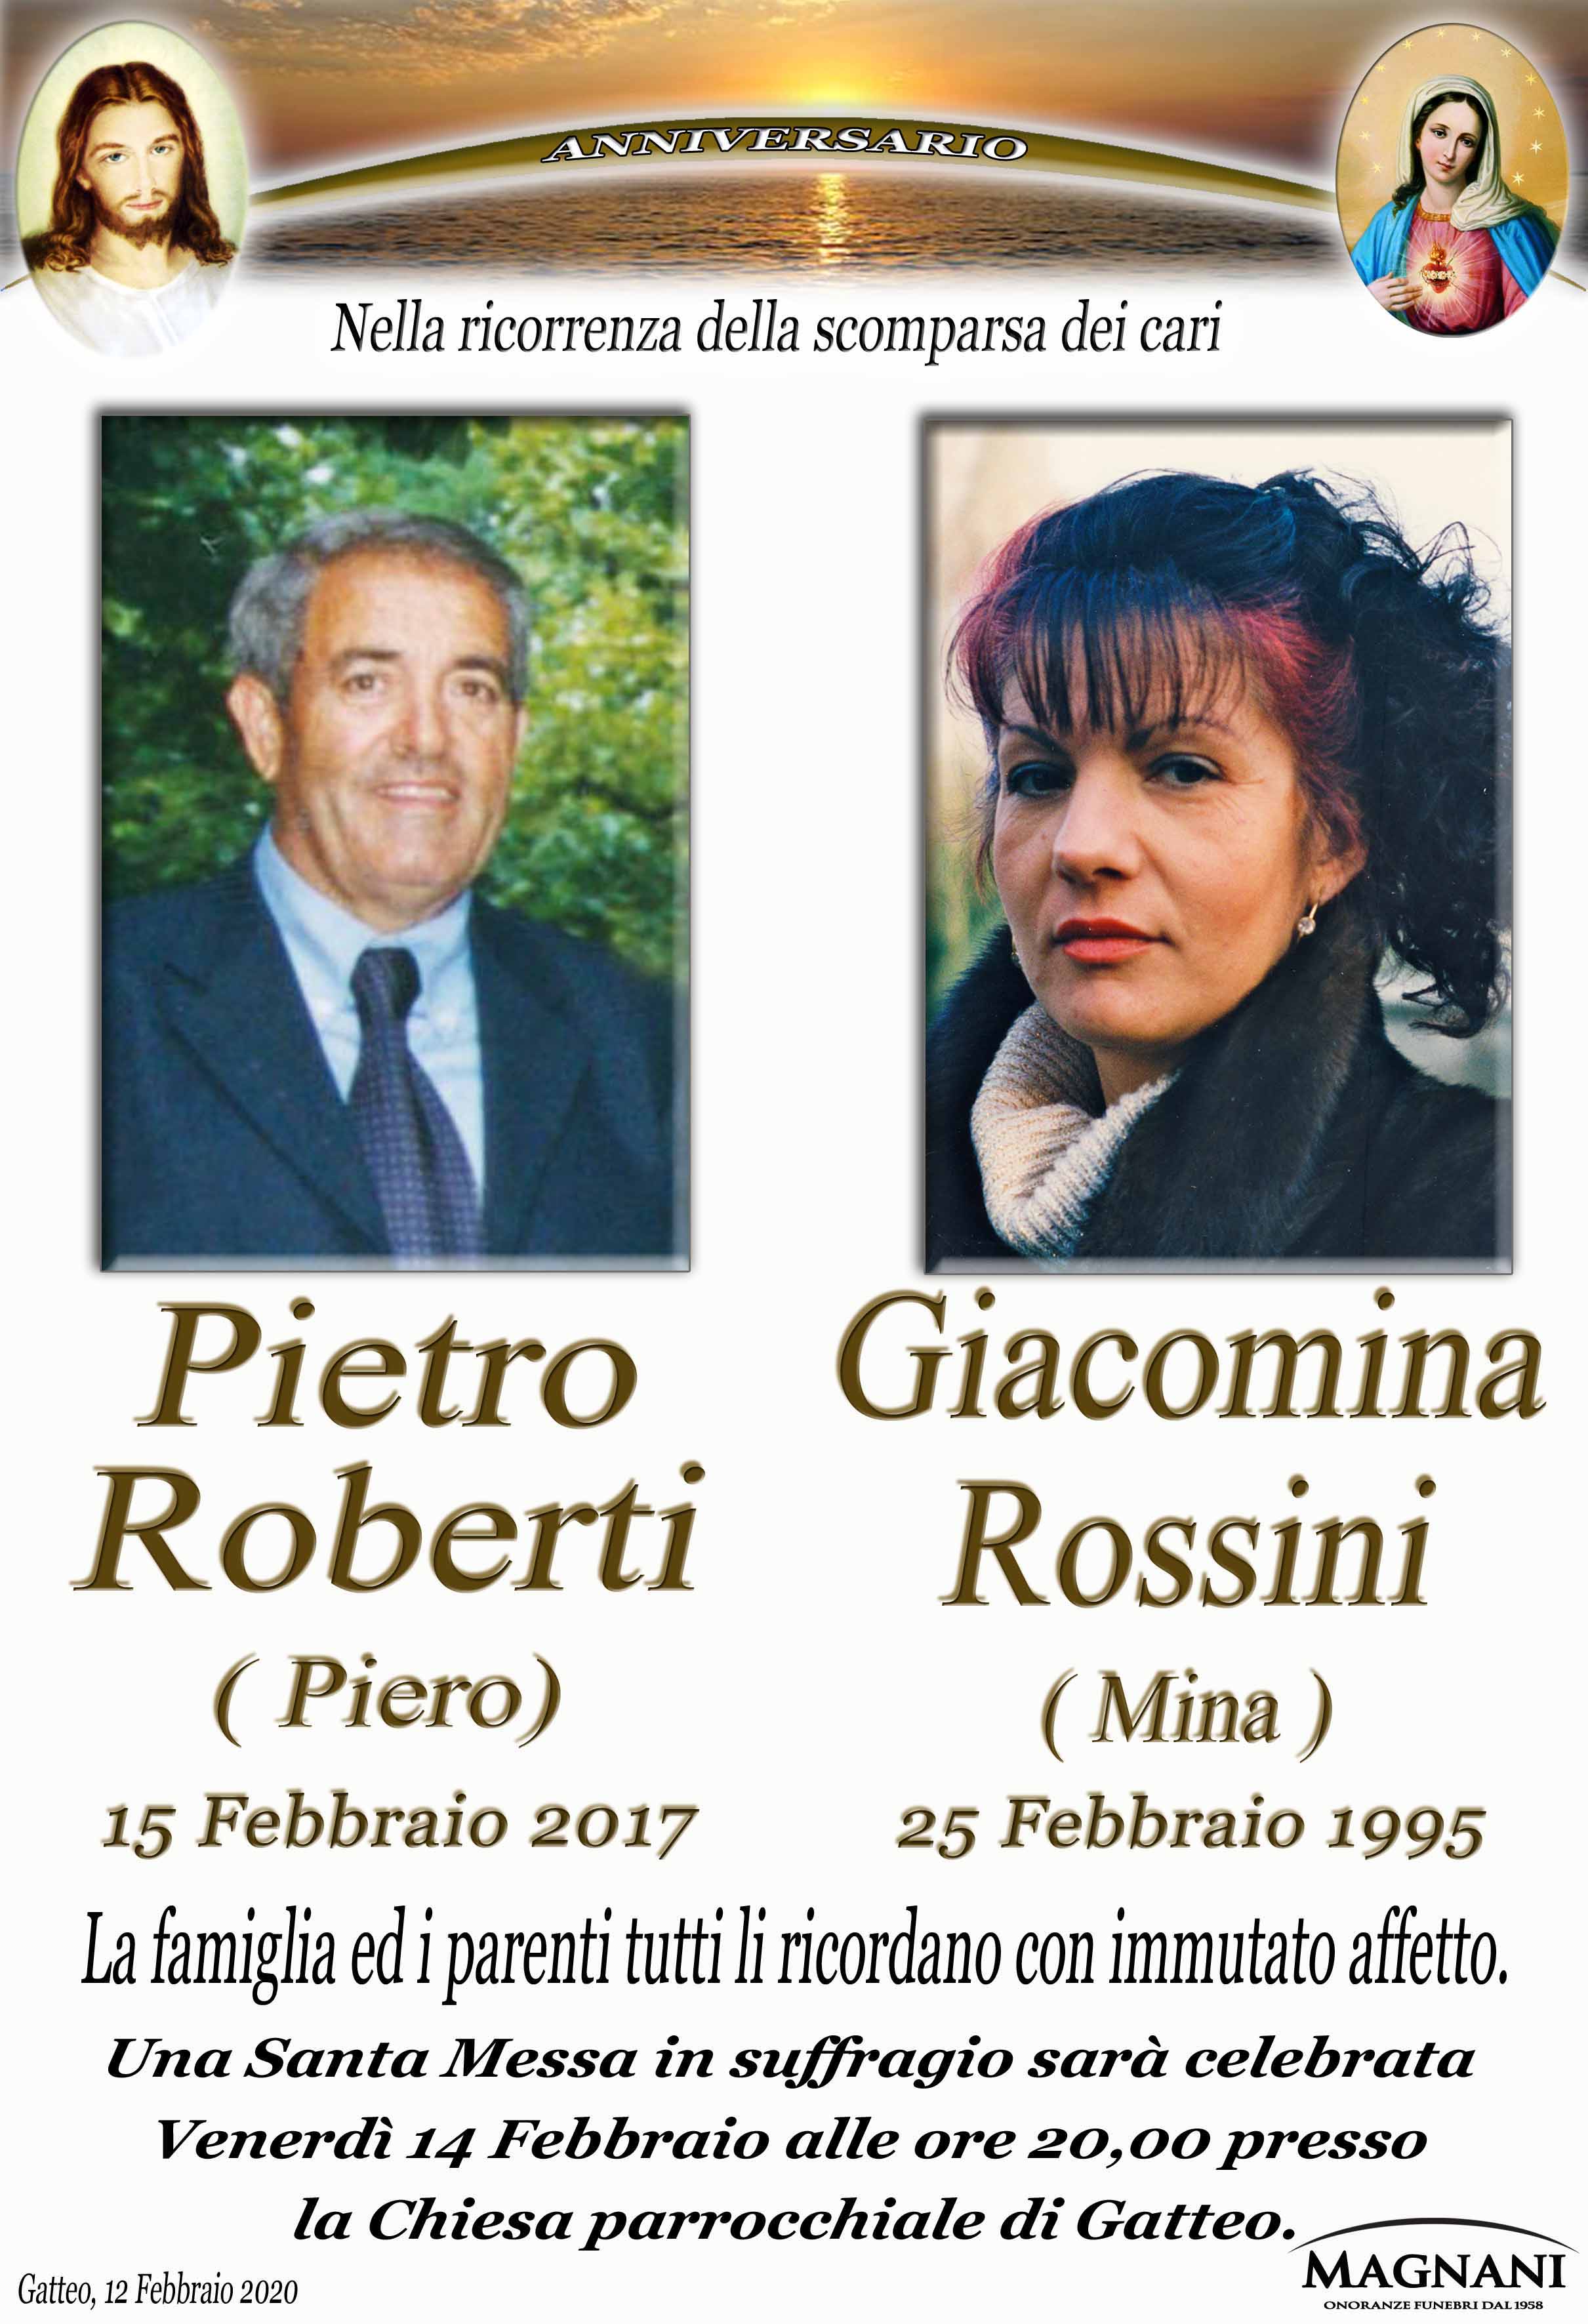 Coniugi Pietro Roberti e Giacomina Rossini